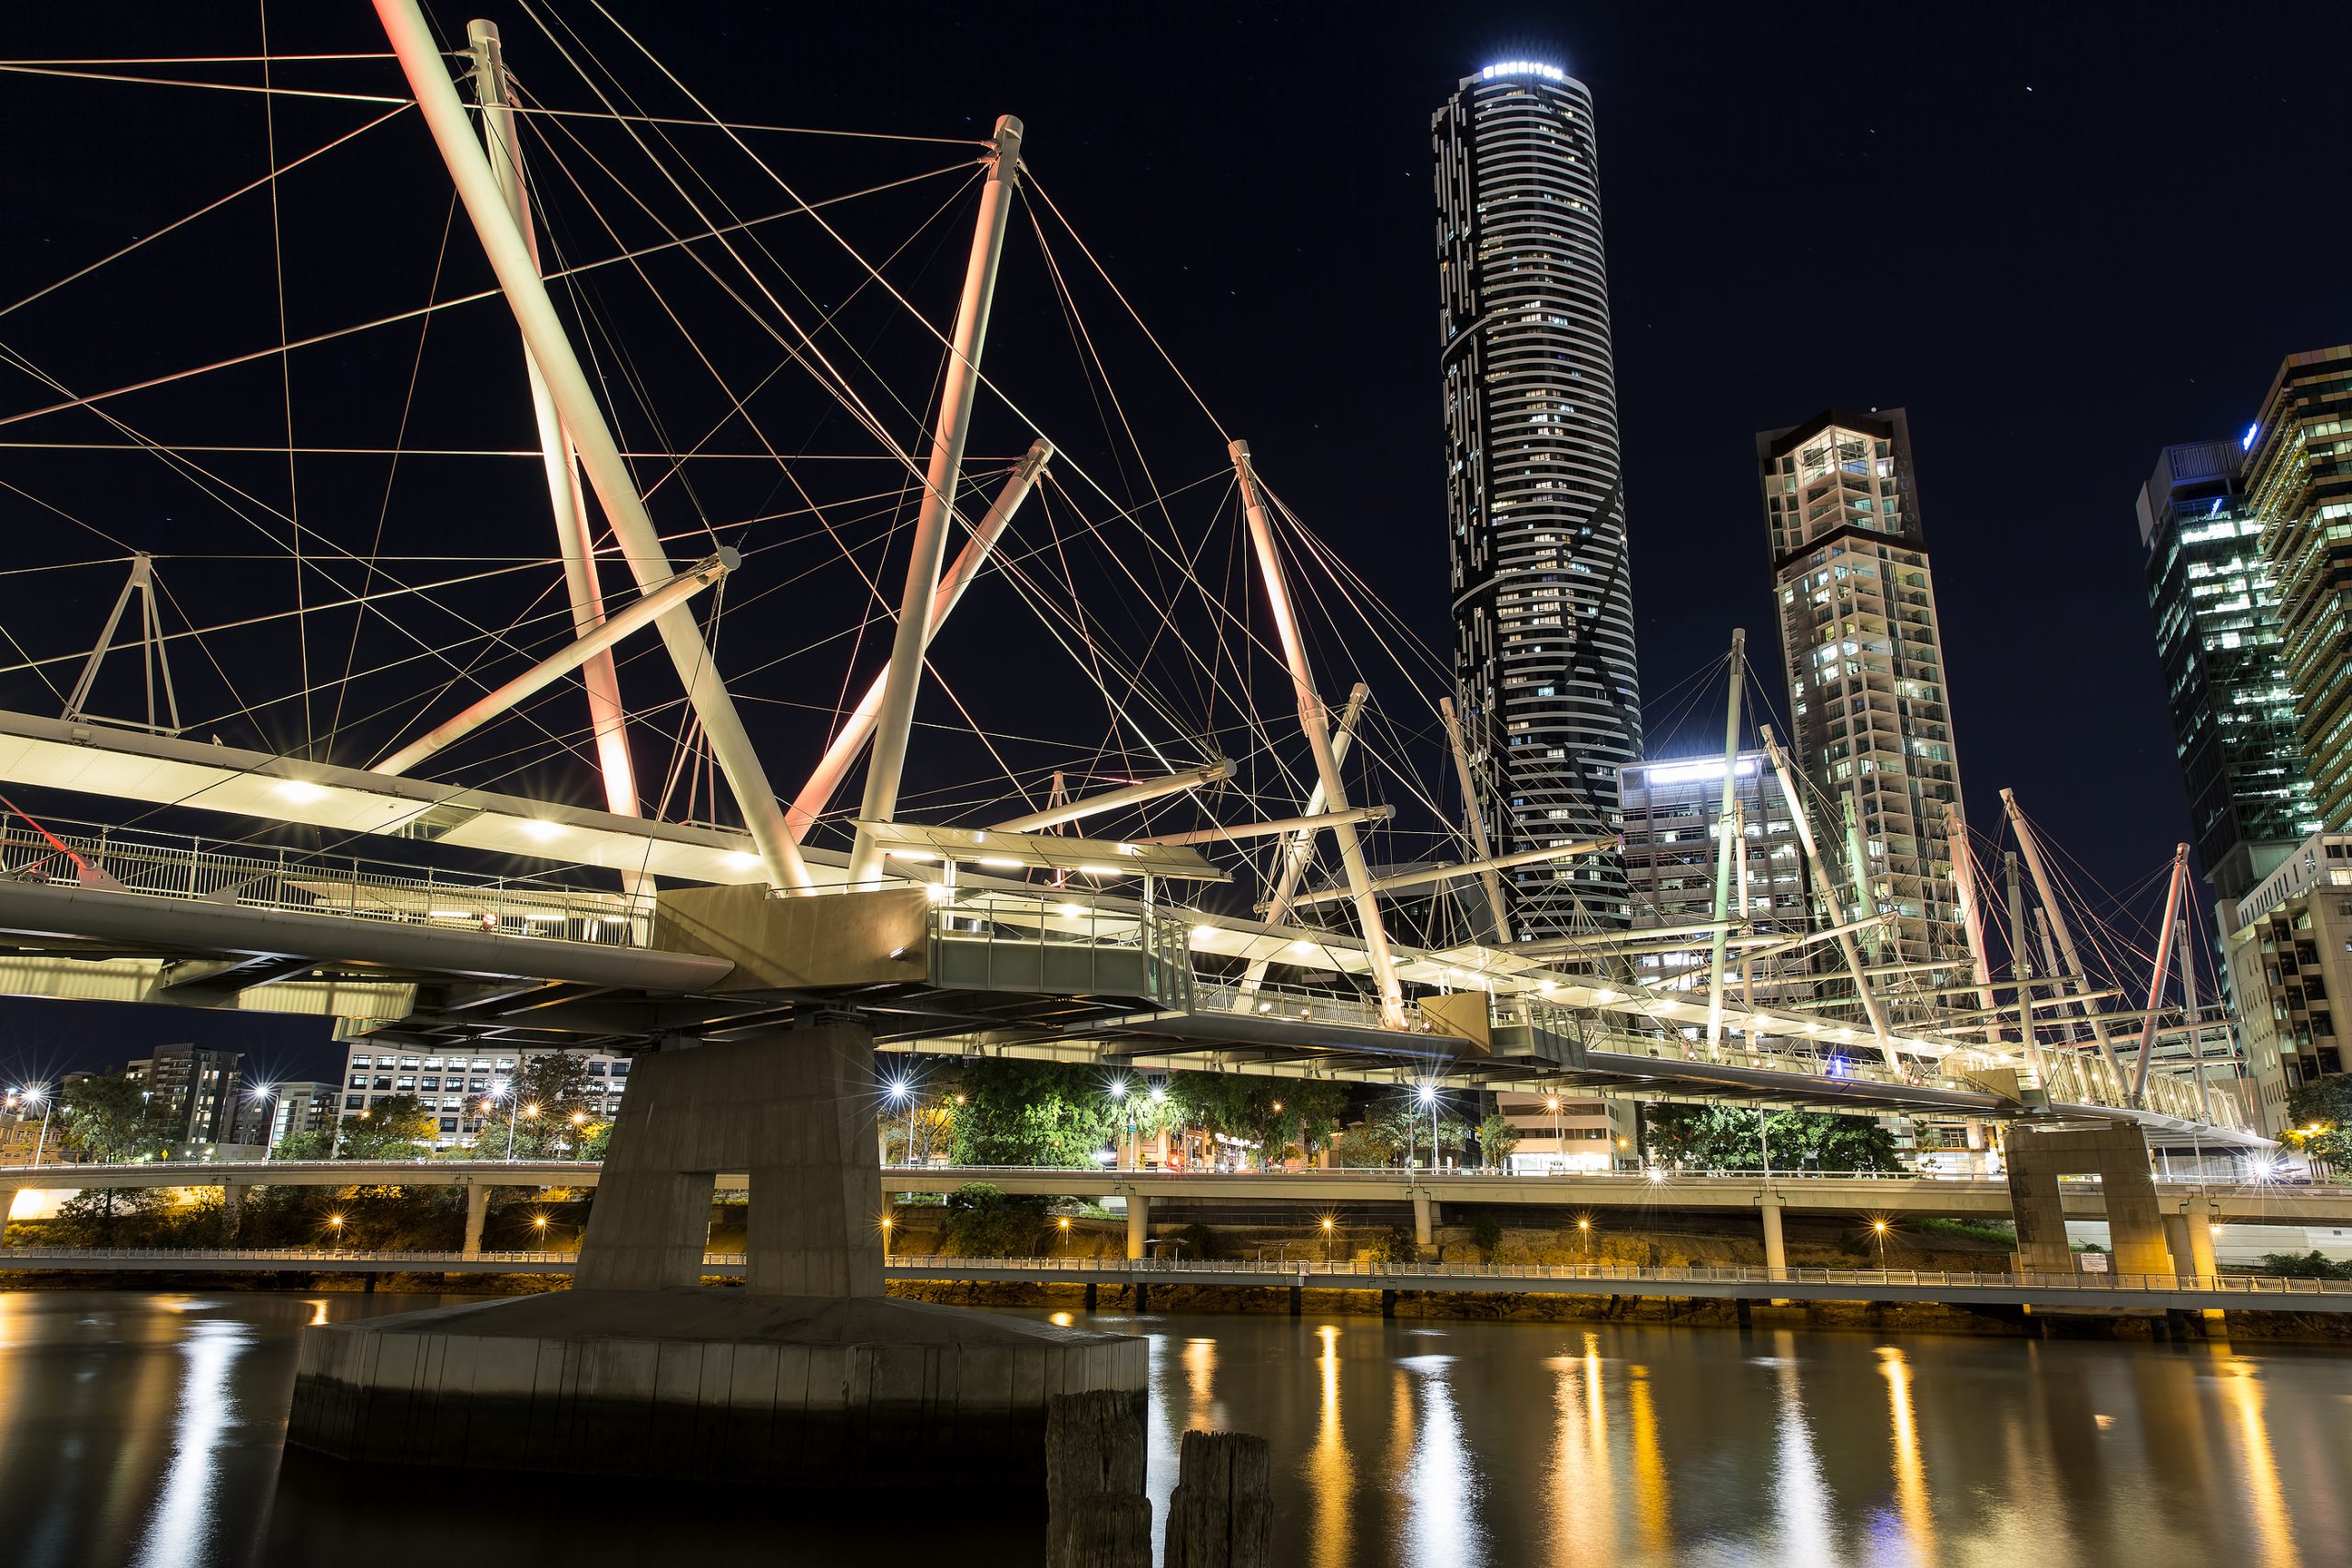 Brisbanes architectural styles